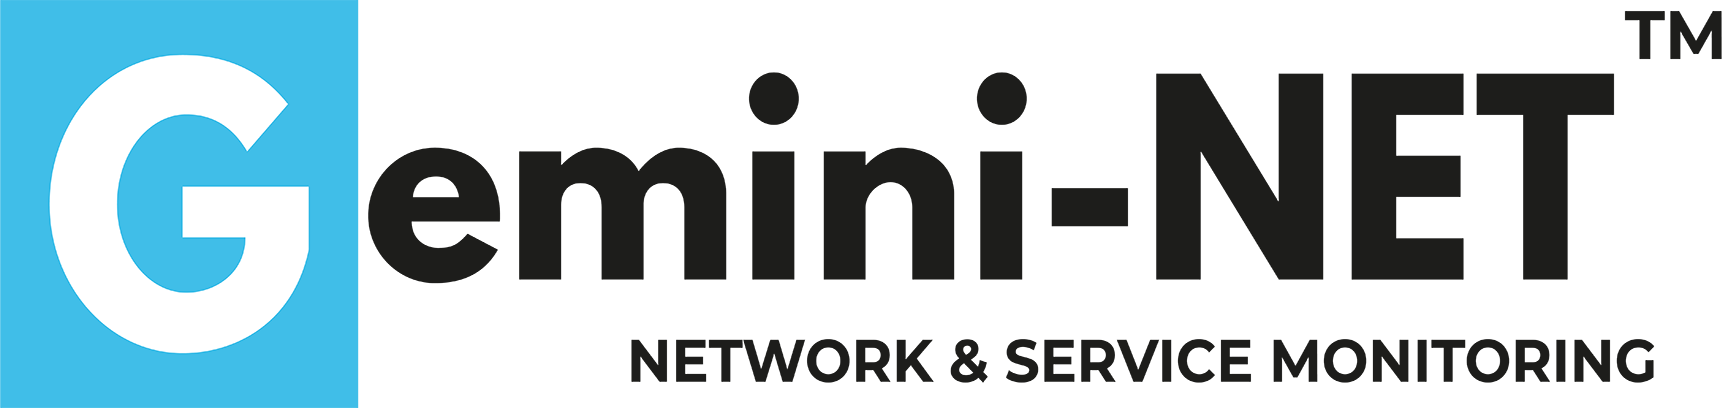 Gemini - monitoraggio end-to-end di reti e servizi di comunicazione | Resi Informatica